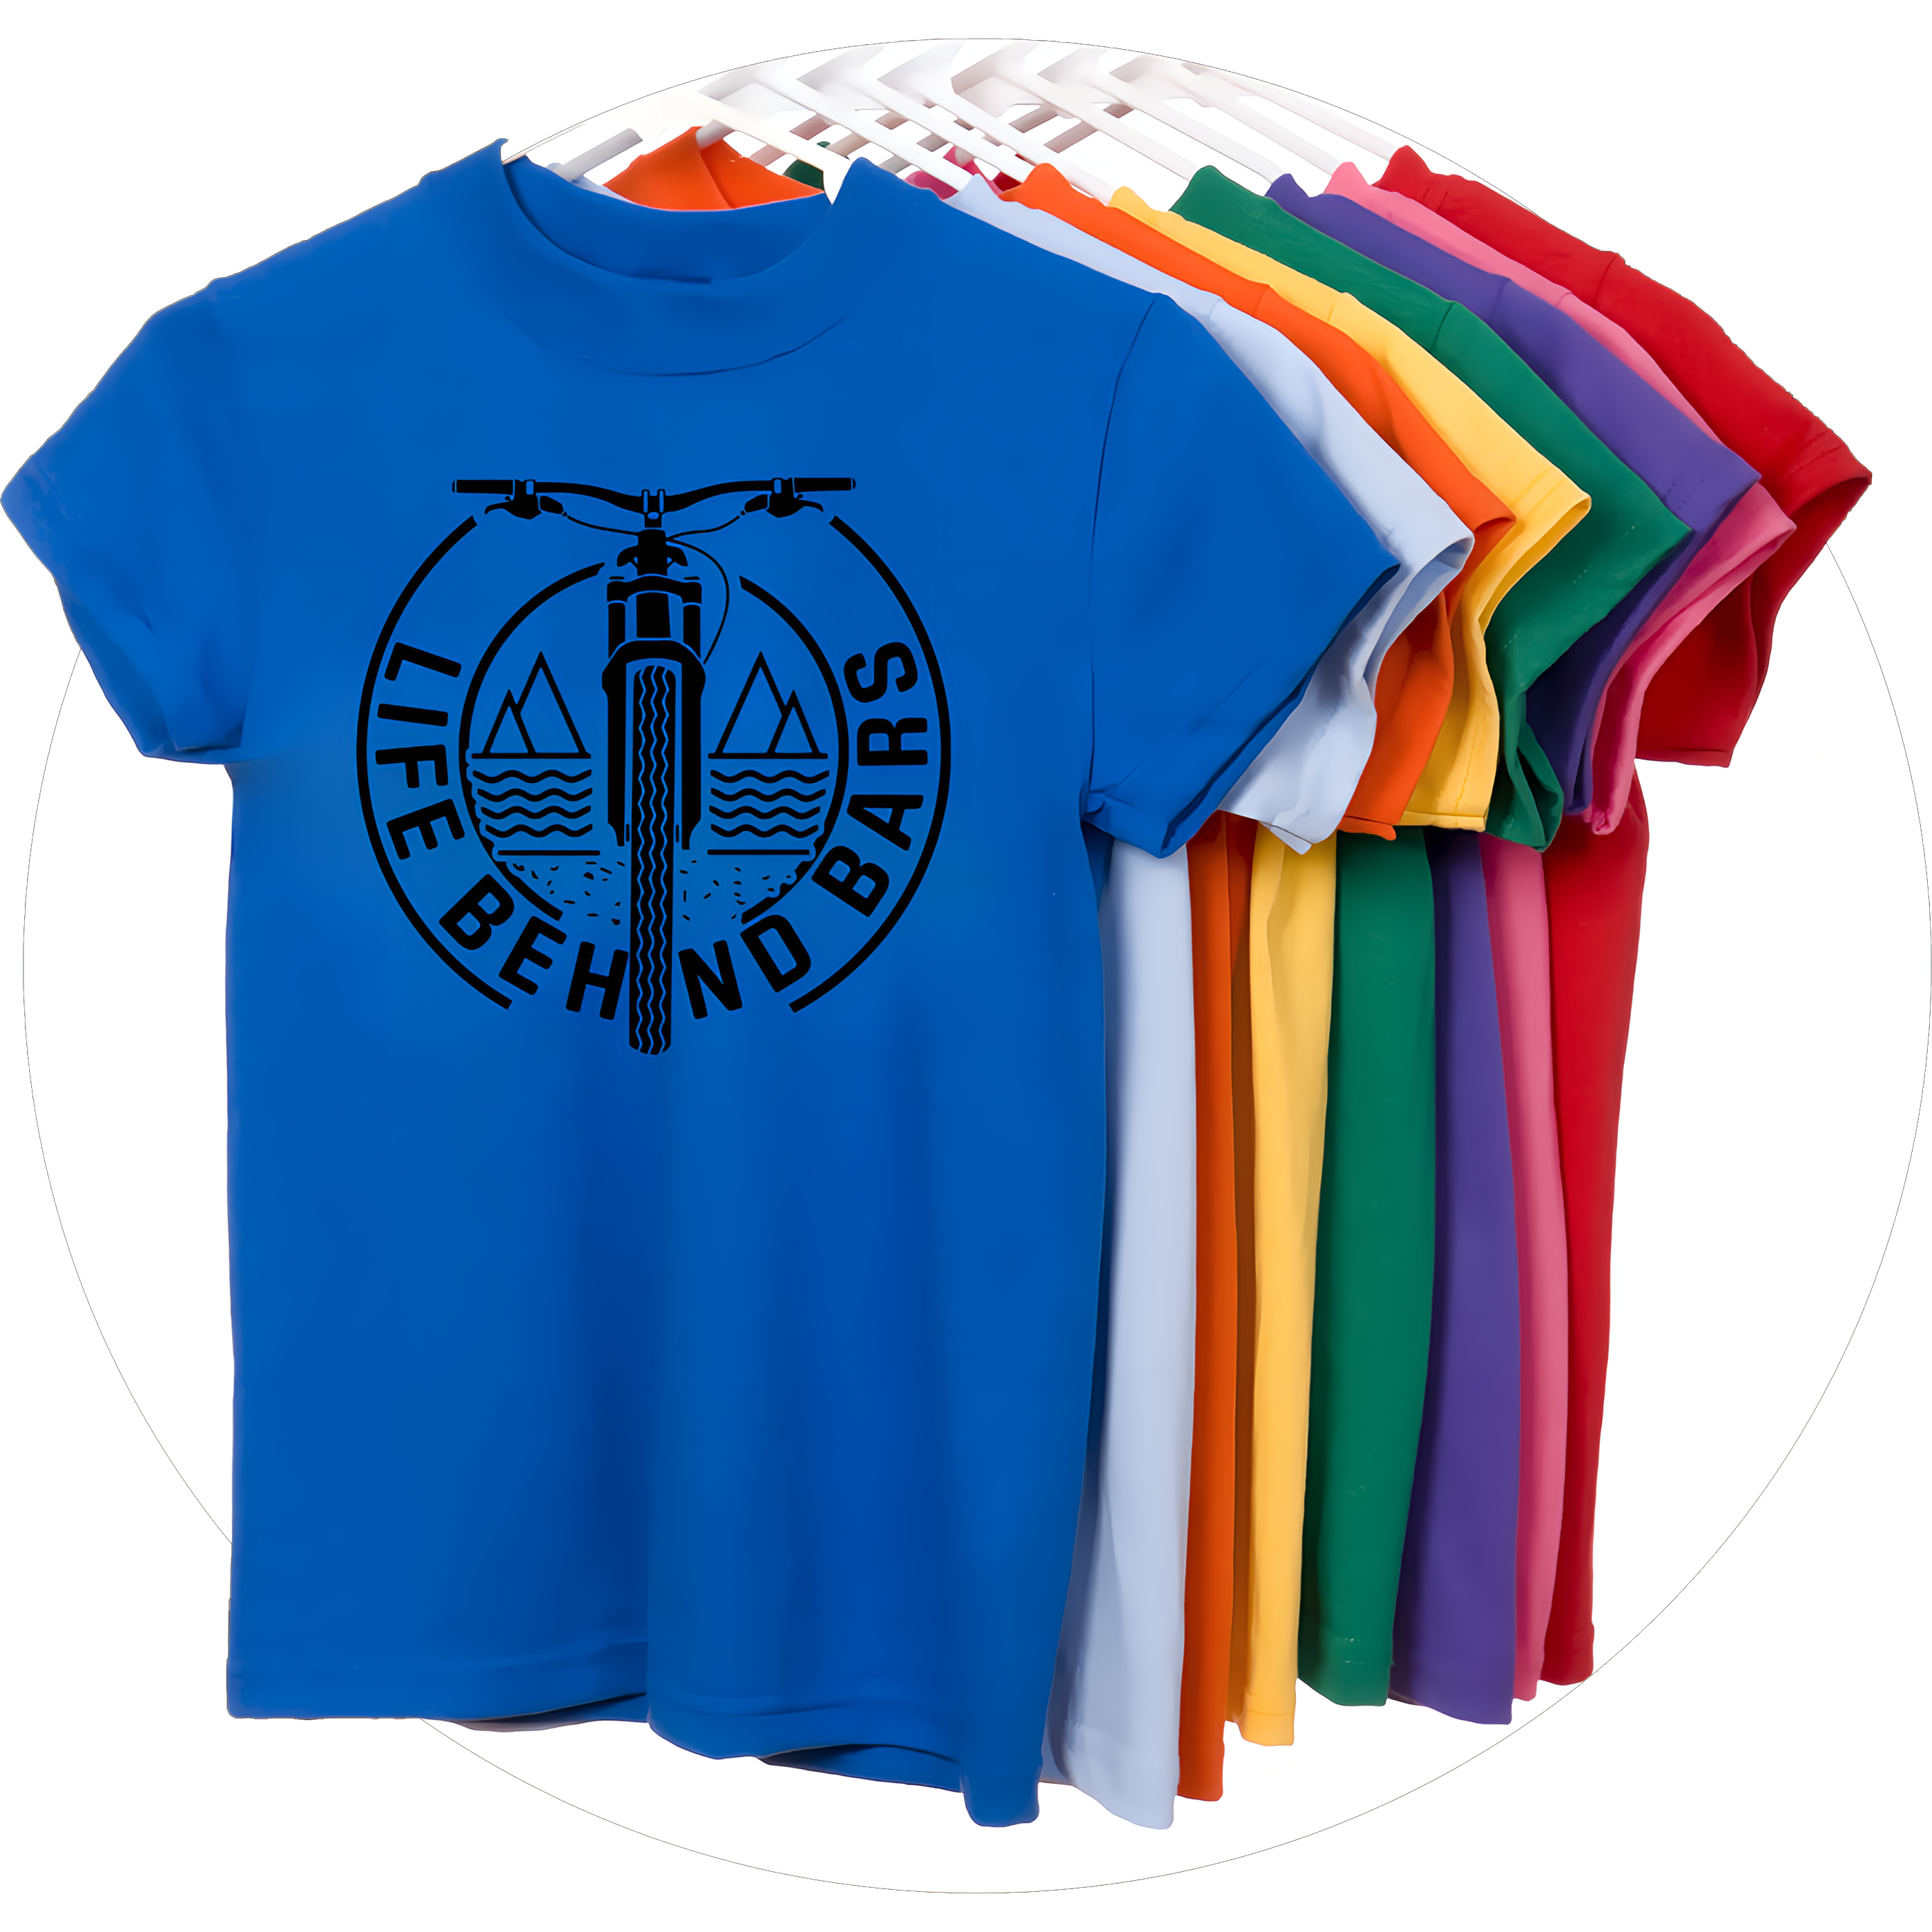 genoeg Controle Fietstaxi T shirts bedrukken met logo vanaf 1 stuk || ontwerpen bij Leoworkshop.nl